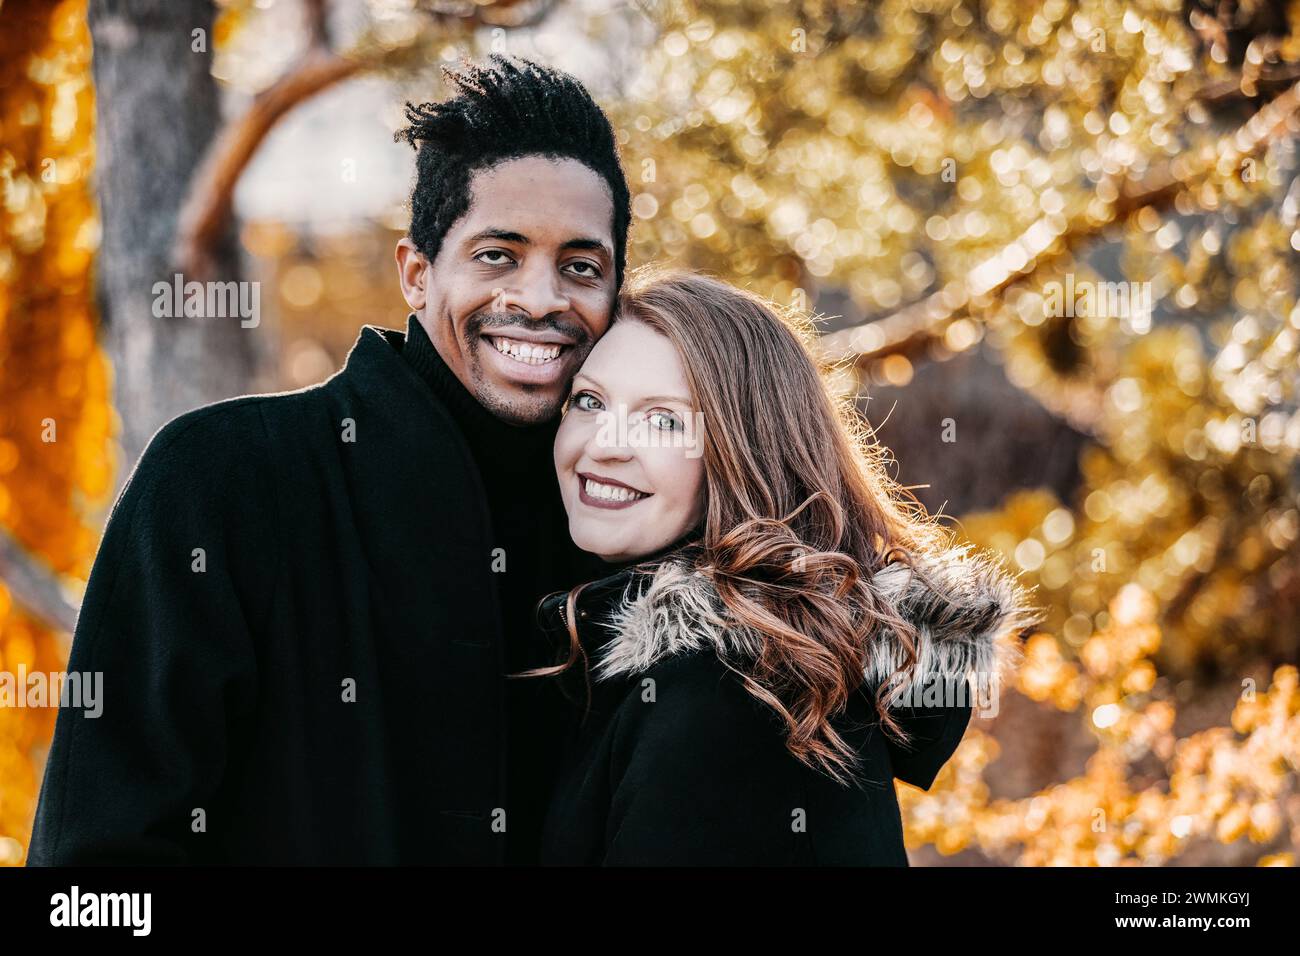 Nahaufnahme eines Paares mit gemischter Rasse, das in die Kamera lächelt und während eines Familienausflugs im Herbst in einem Stadtpark wertvolle Zeit miteinander verbringt Stockfoto